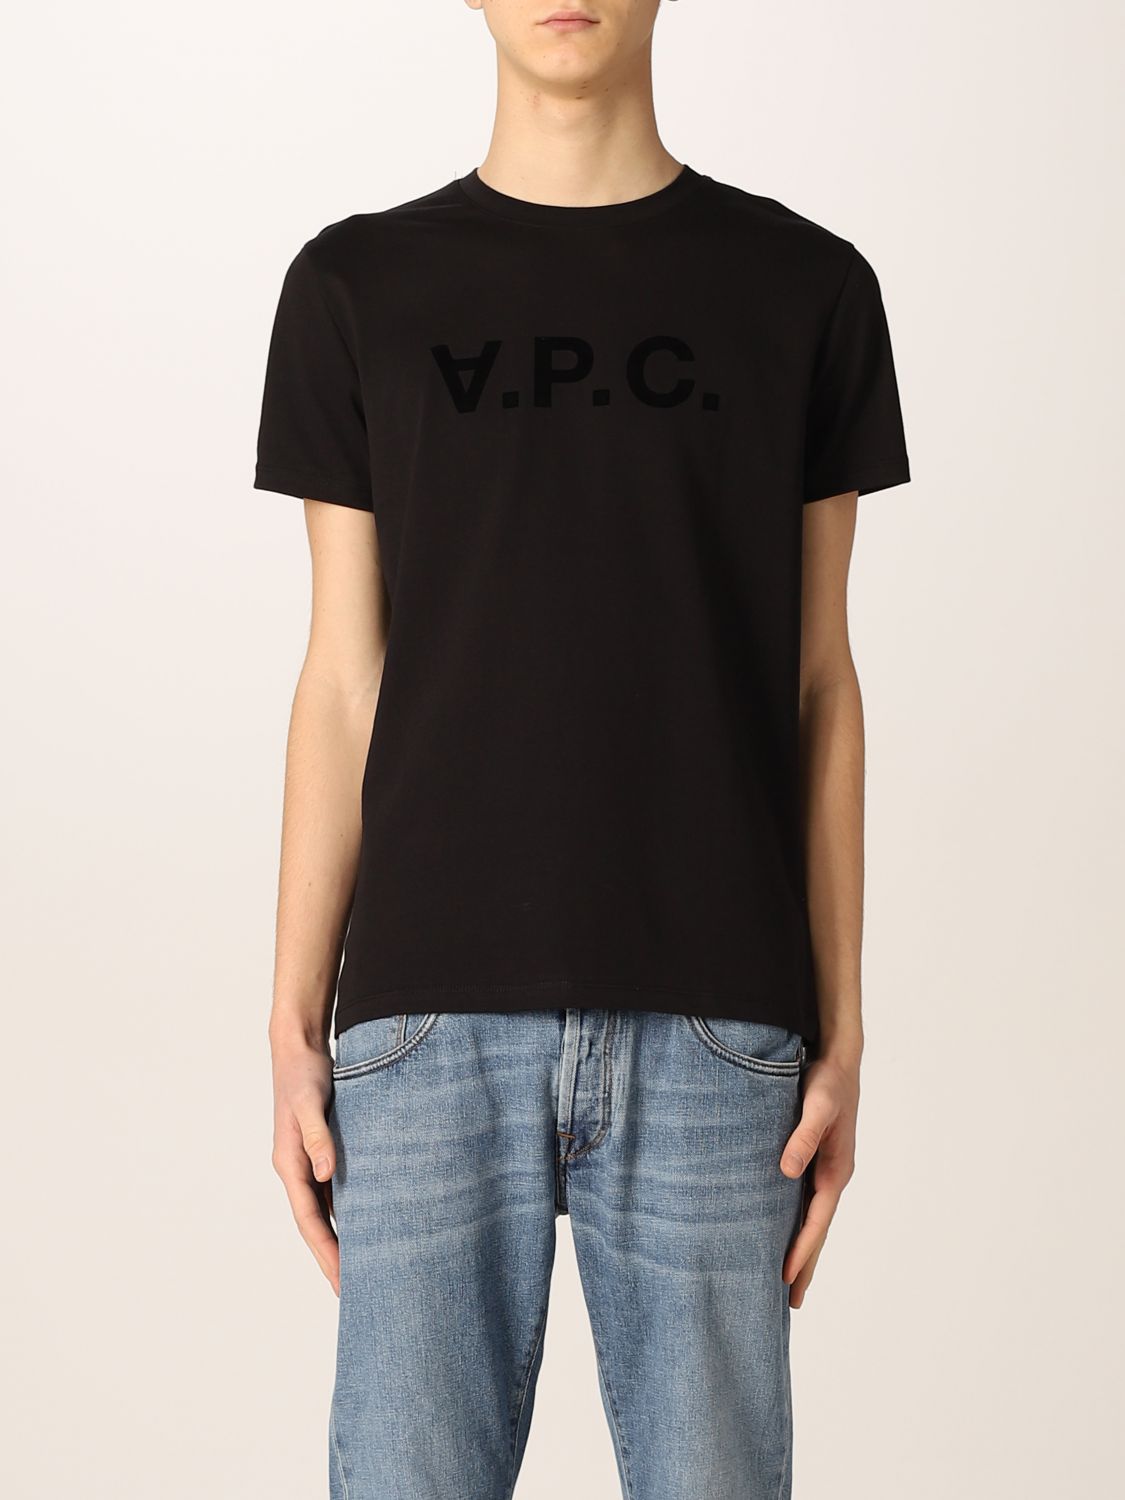 T-shirt A.p.c.: A.p.c. t-shirt in cotton with logo black 1